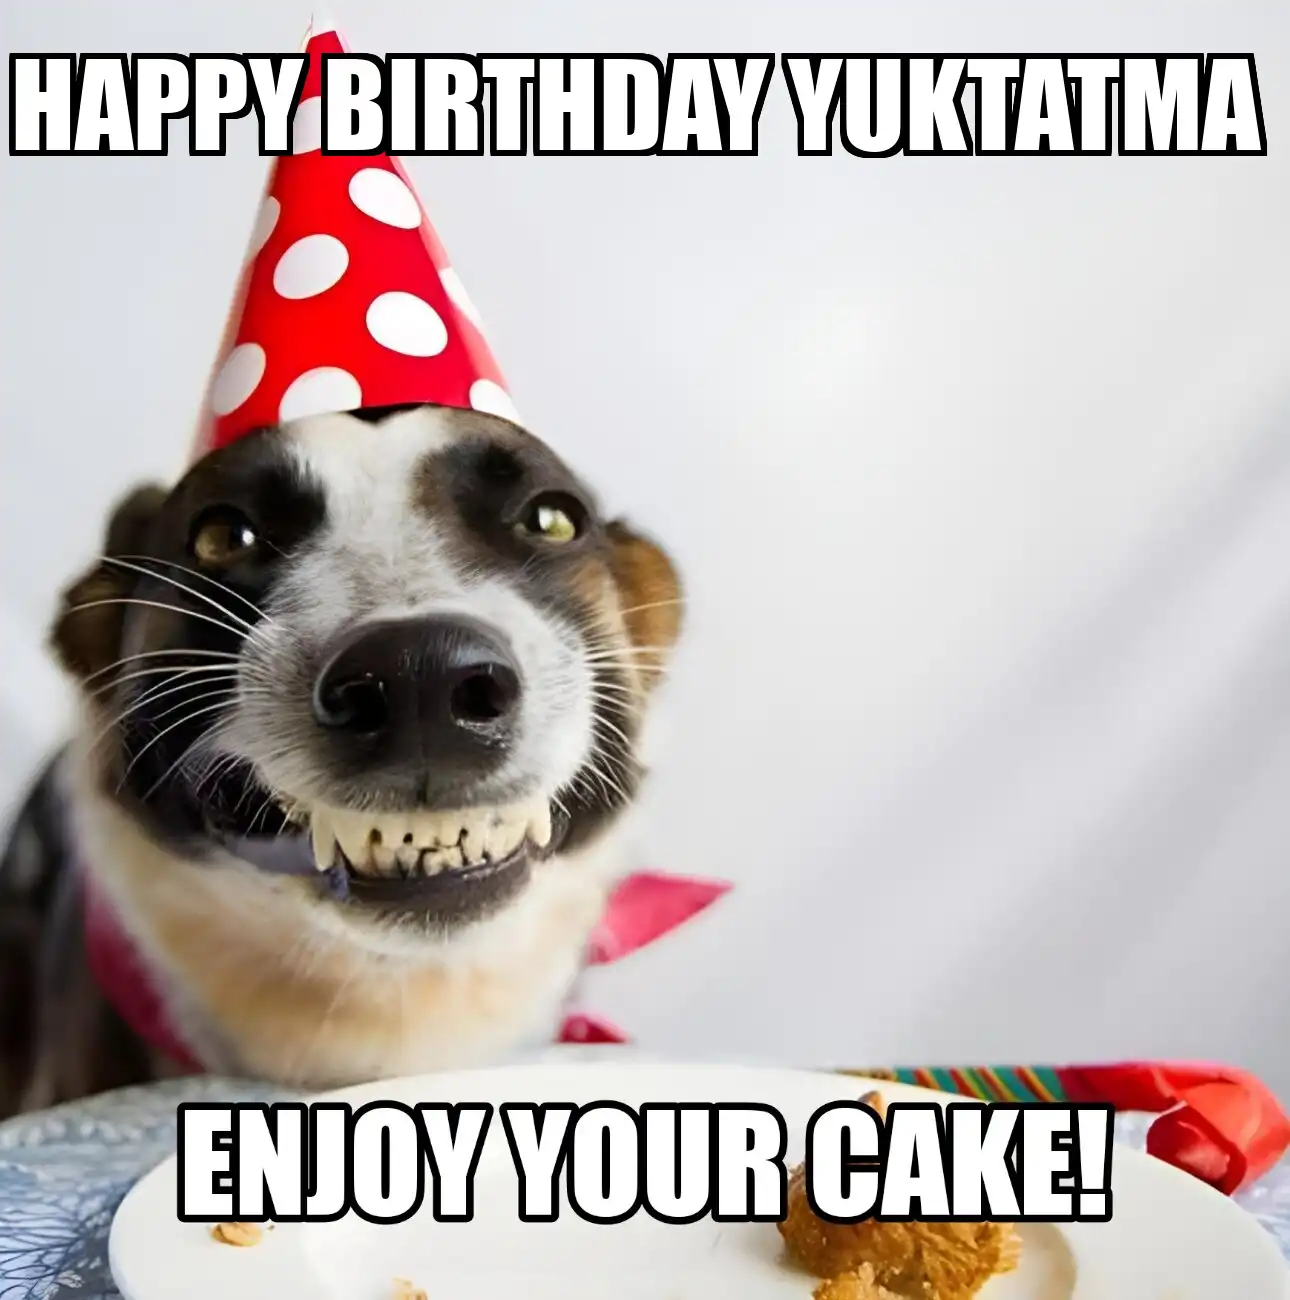 Happy Birthday Yuktatma Enjoy Your Cake Dog Meme